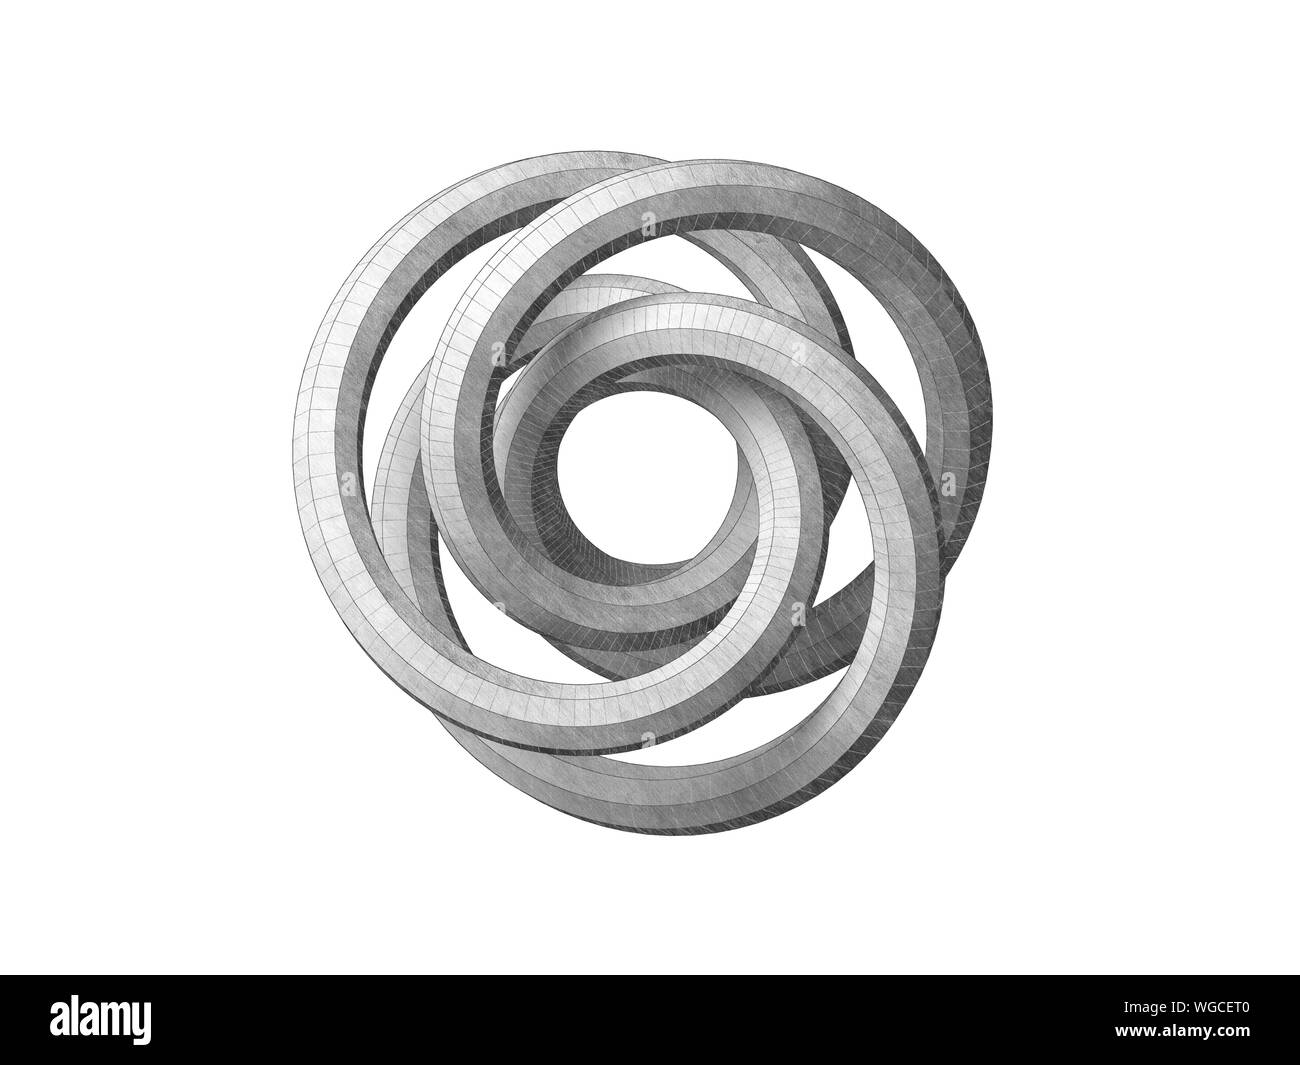 Torus knot représentation géométrique. Objet abstrait isolé sur fond blanc. Crayon Graphite rendu 3d illustration stylisée Banque D'Images